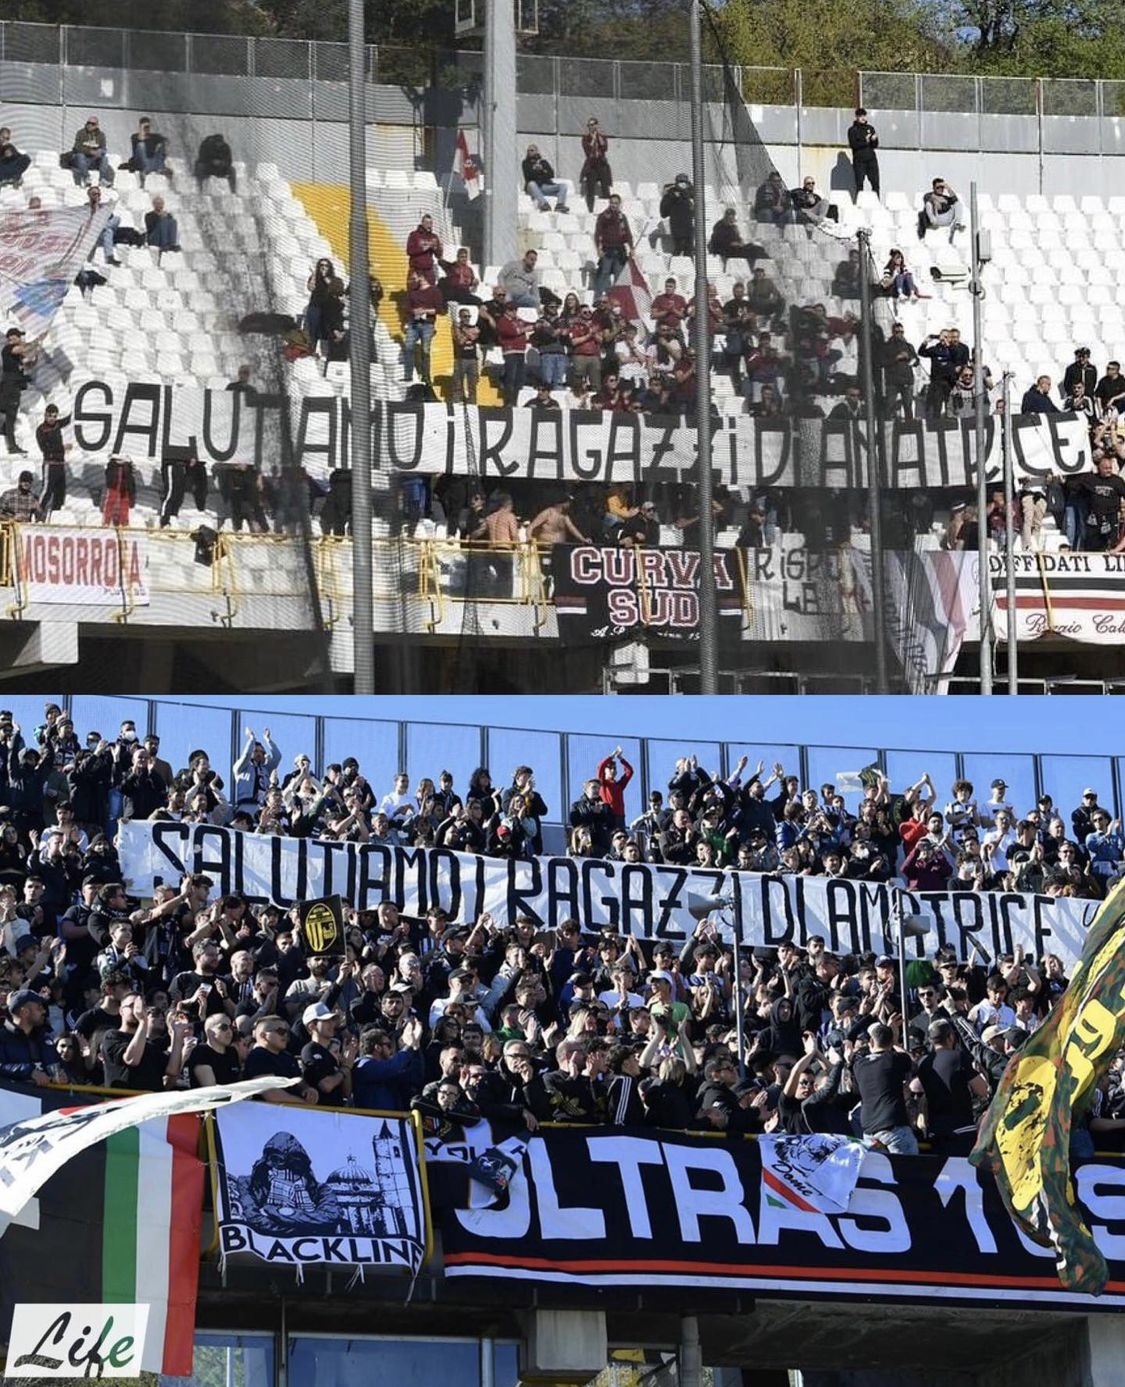 Ultras uniti per Amatrice: lo striscione “Salutiamo i ragazzi di Amatrice” delle due curve in occasione della partita Ascoli – Reggina